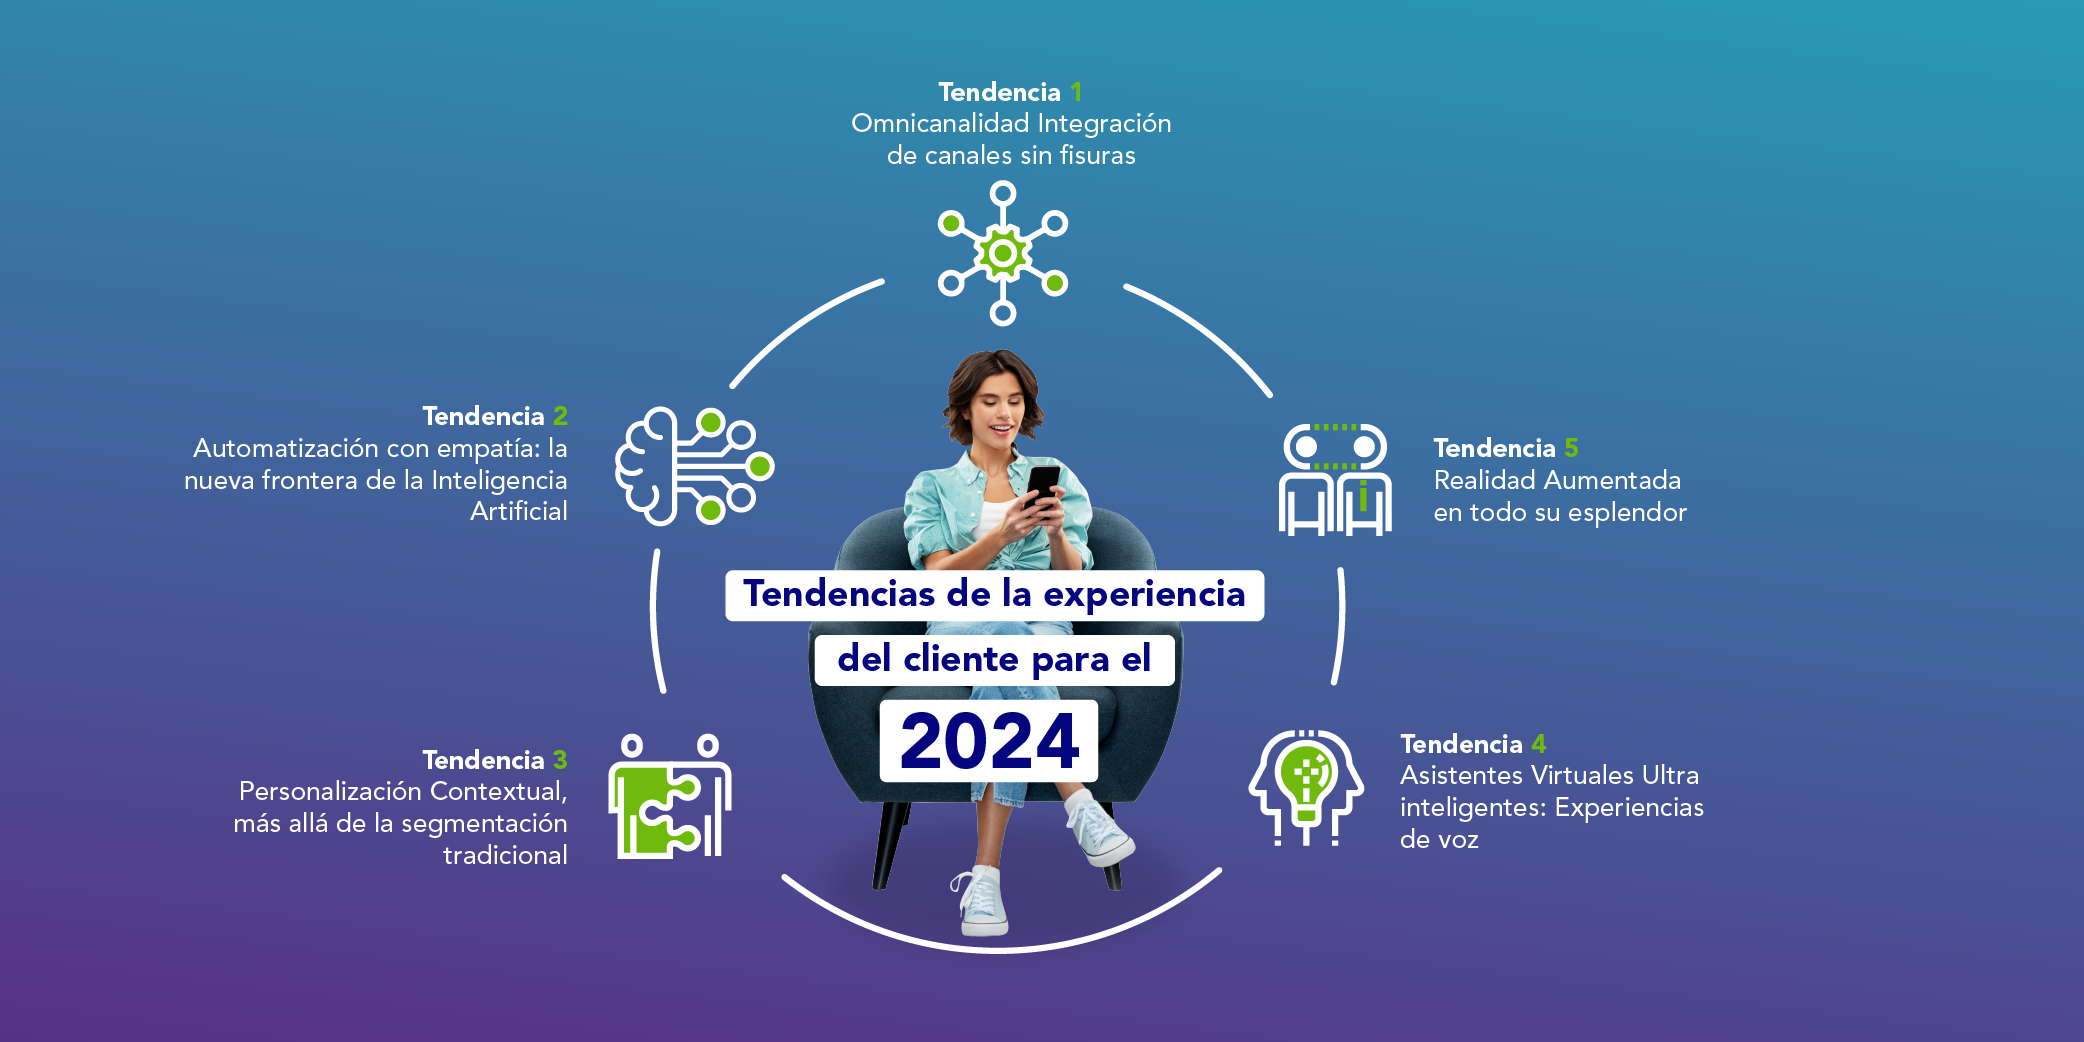 Mujer viendo celular, en medio letras que dicen tendencias de la experiencia del cliente 2024, alrededor iconos simulando tendencias